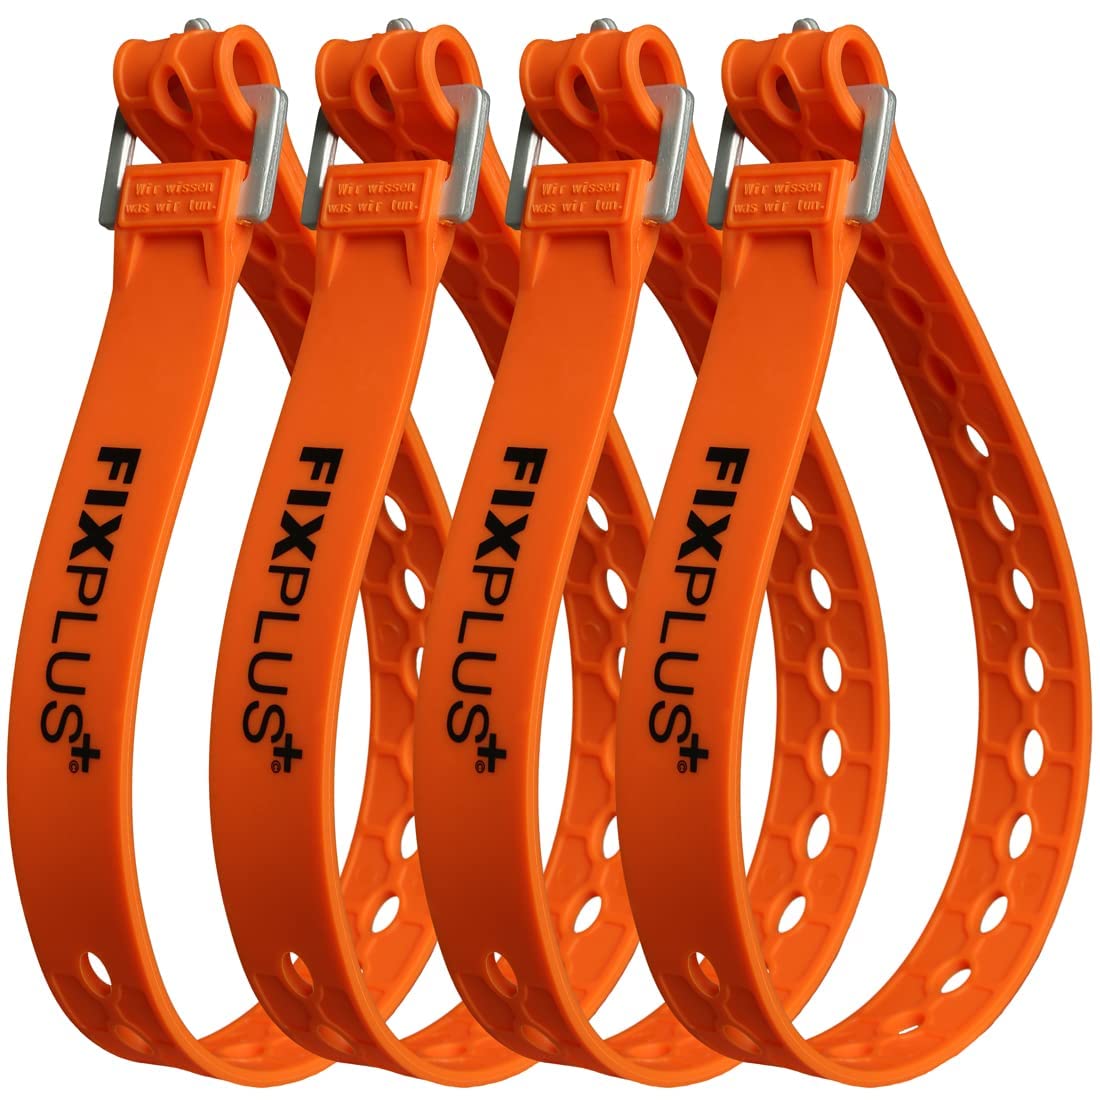 Fixplus Strap 4er-Pack - Zurrgurt Zum Sichern, Befestigen, Bündeln und Festzurren, aus Spezialkunststoff mit Aluminiumschnalle 66cm x 2,4cm (orange)